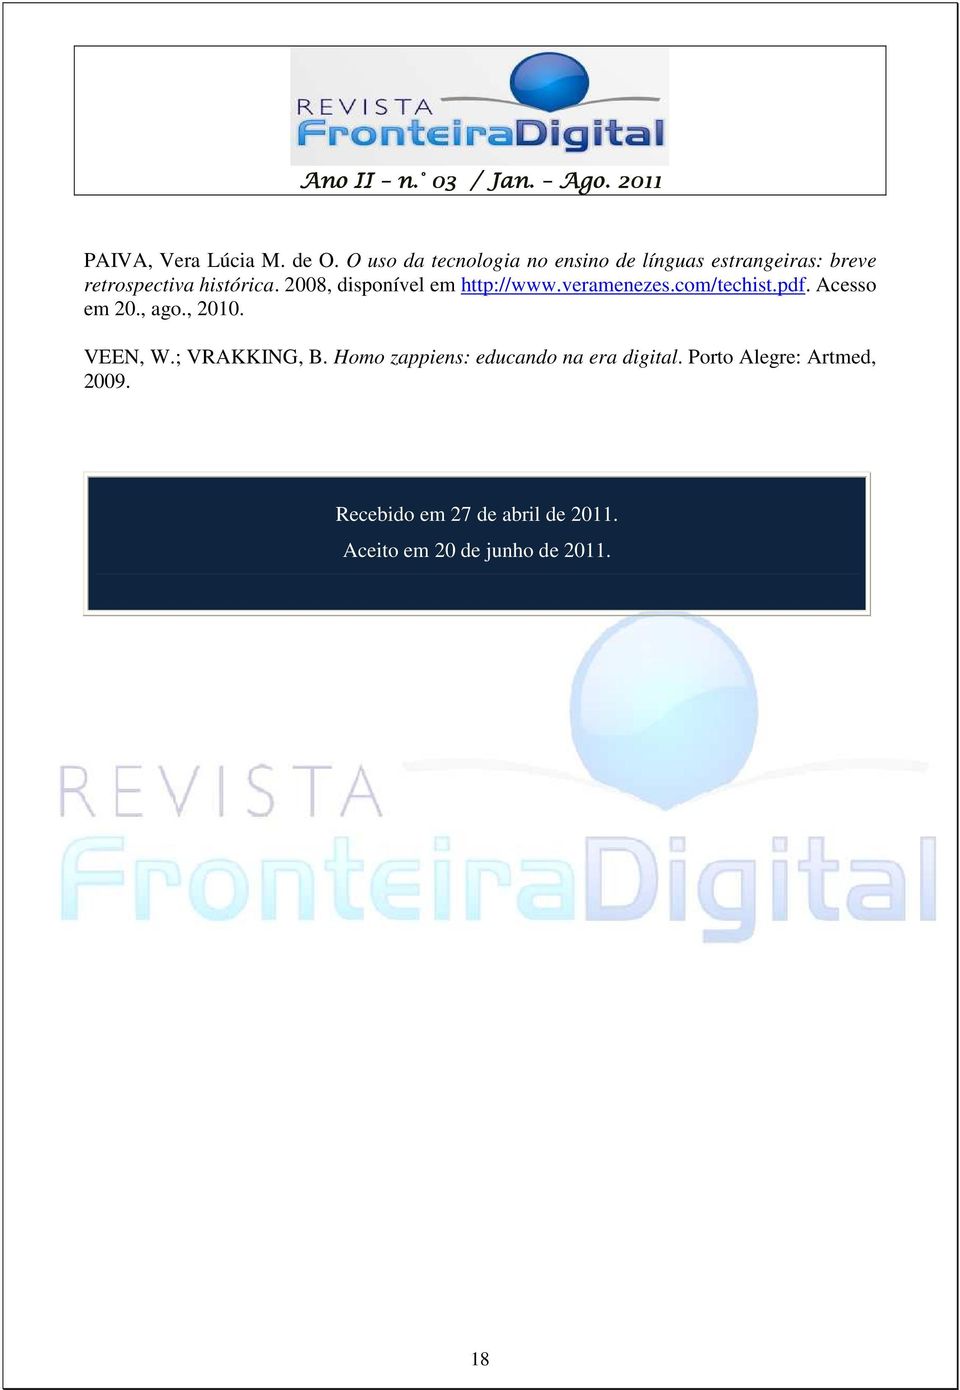 2008, disponível em http://www.veramenezes.com/techist.pdf. Acesso em 20., ago., 2010.